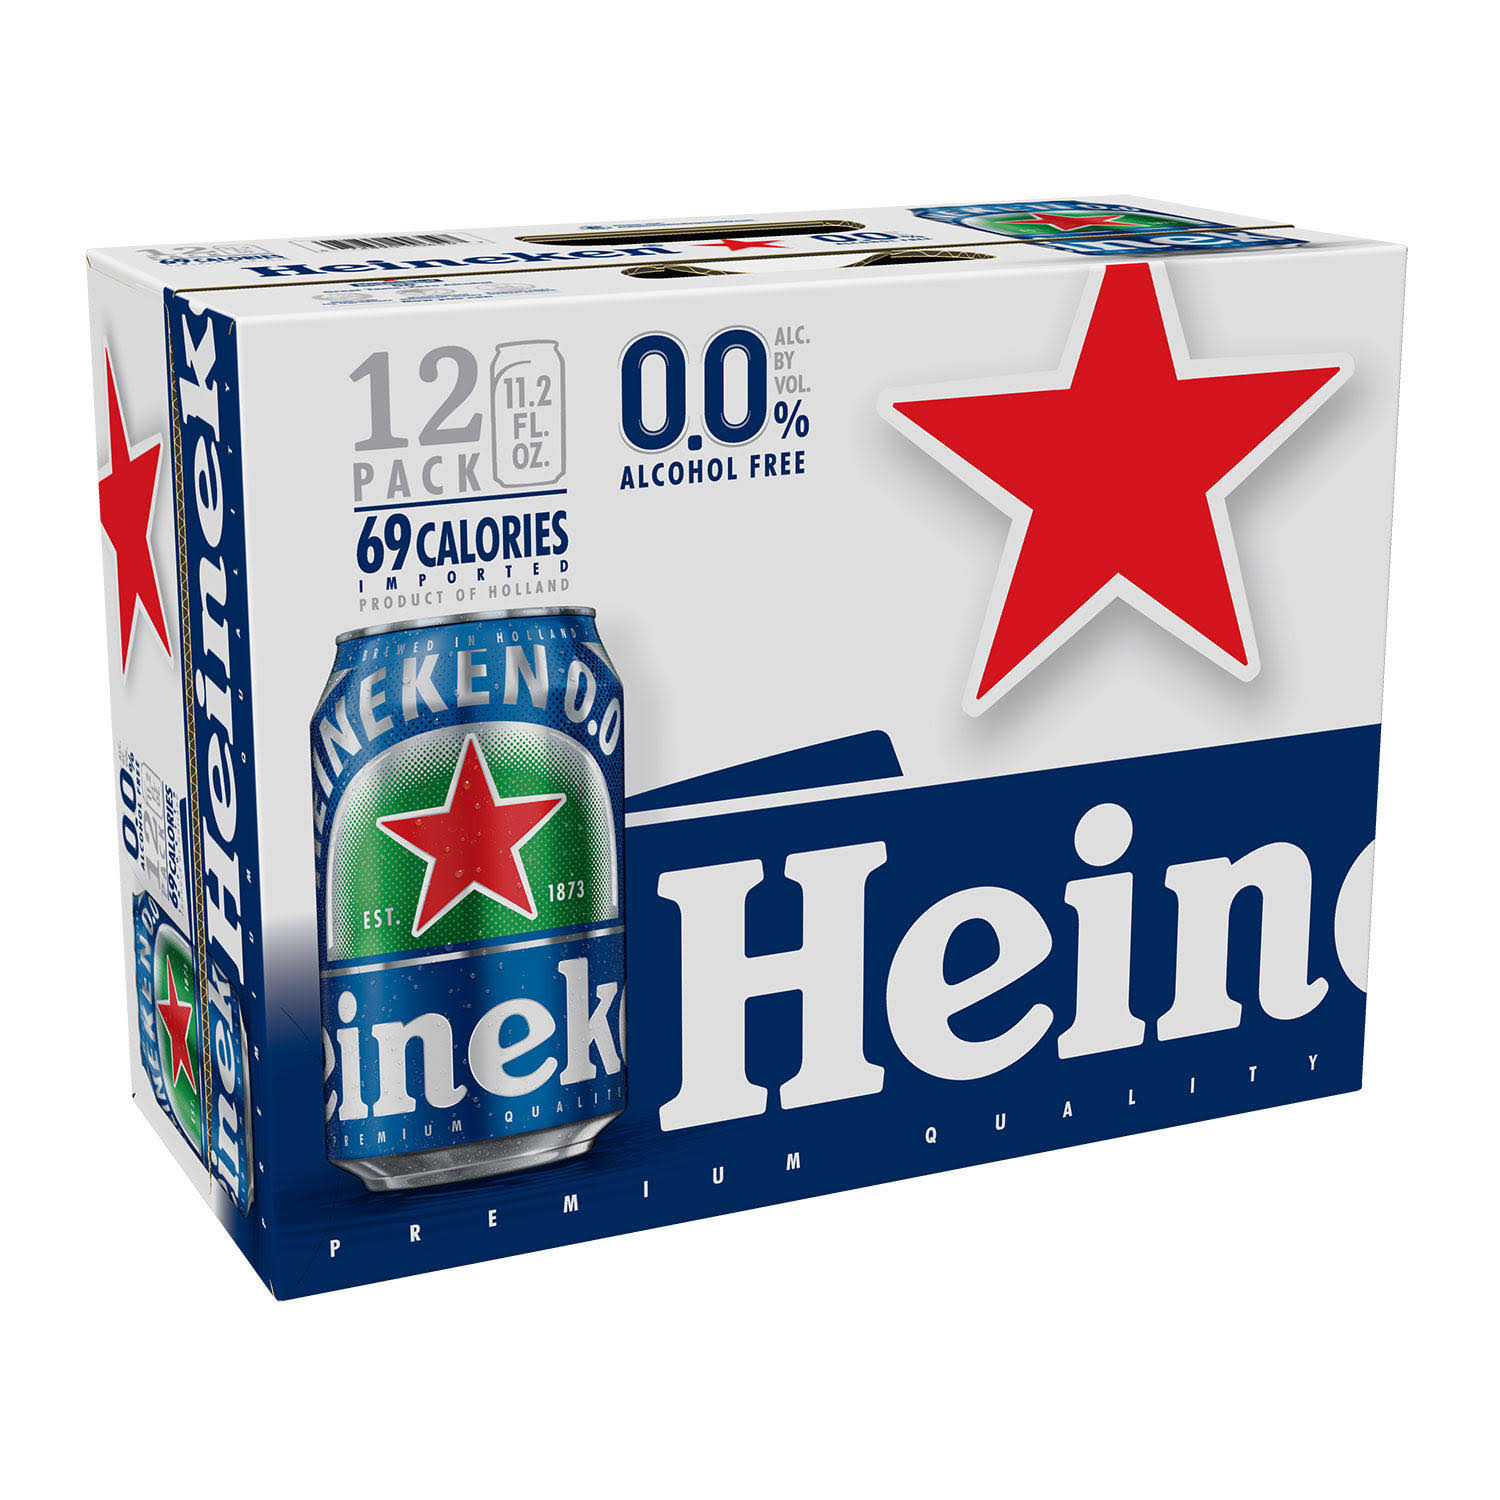 Heineken Beer, 12 Pack - 12 pack, 11.2 fl oz cans